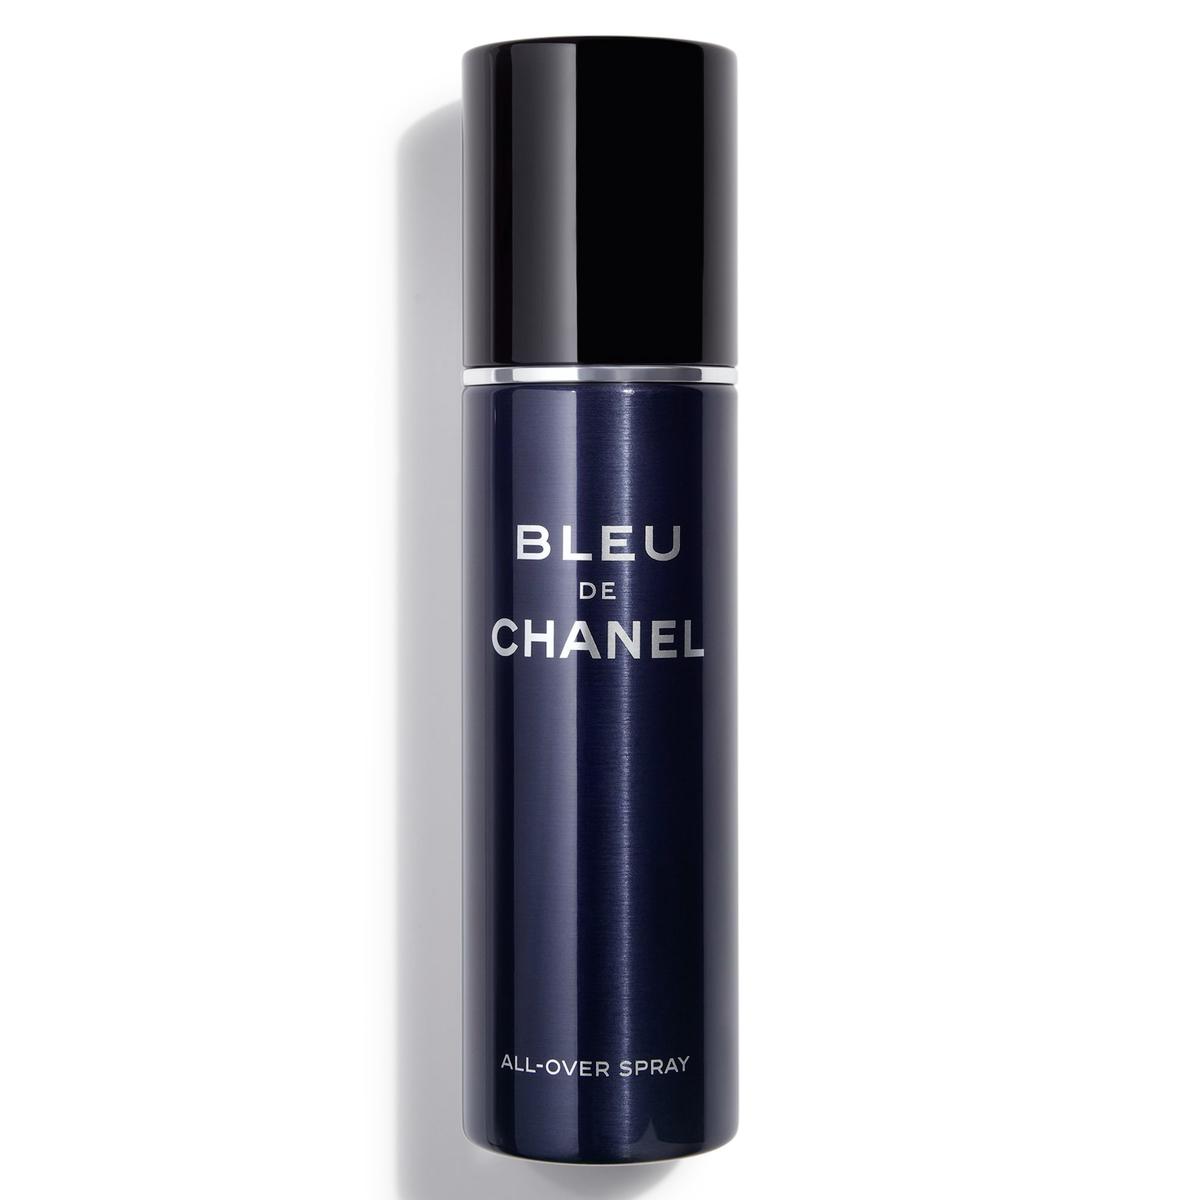 CHANEL BLEU DE CHANEL ALL-OVER SPRAY 100 ml - 1